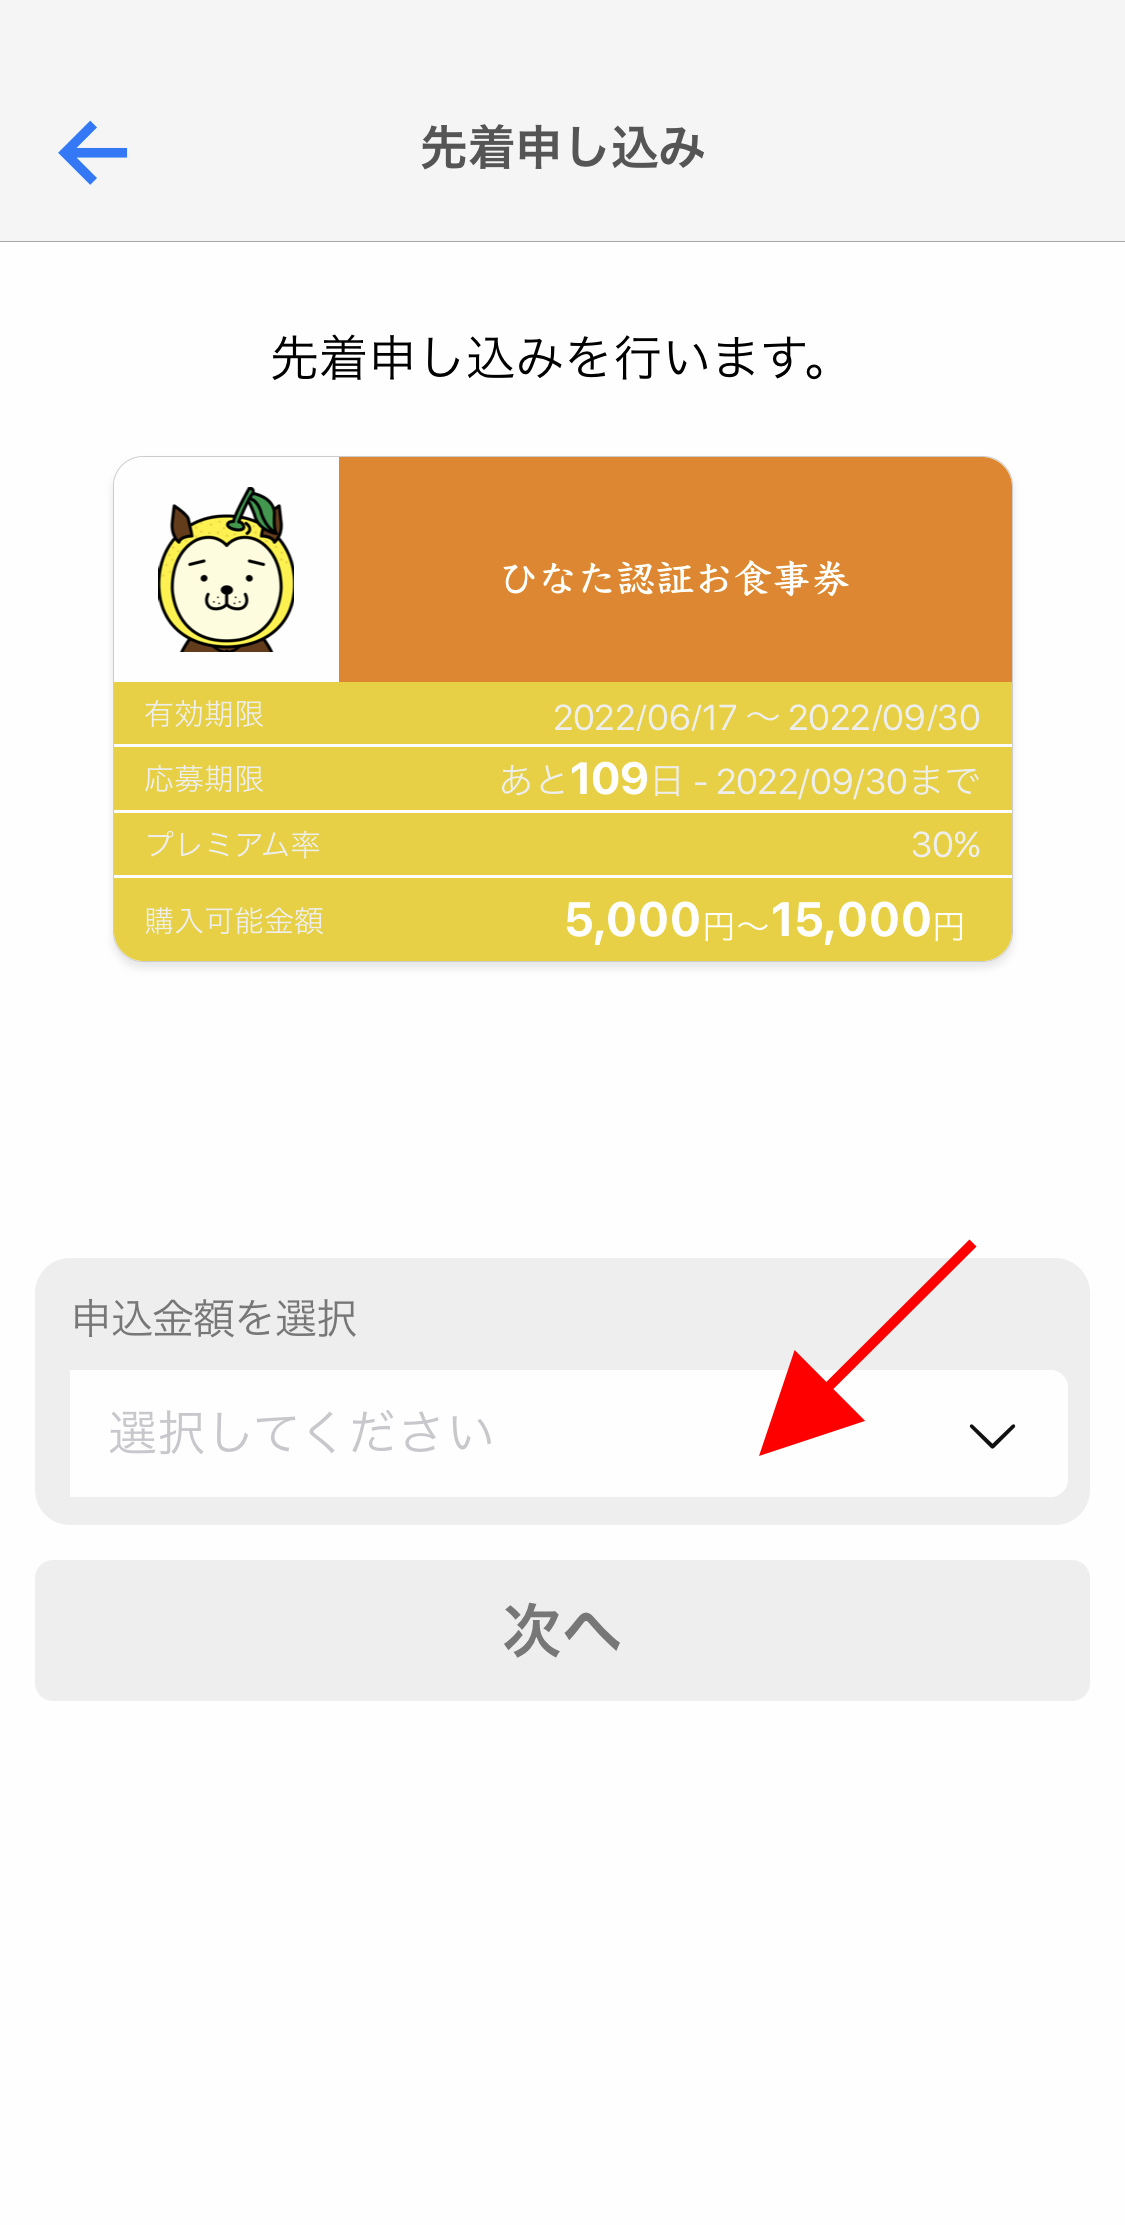 宮崎プレミアム付き電子食事券が6月13日から発売【購入から利用までの流れ】